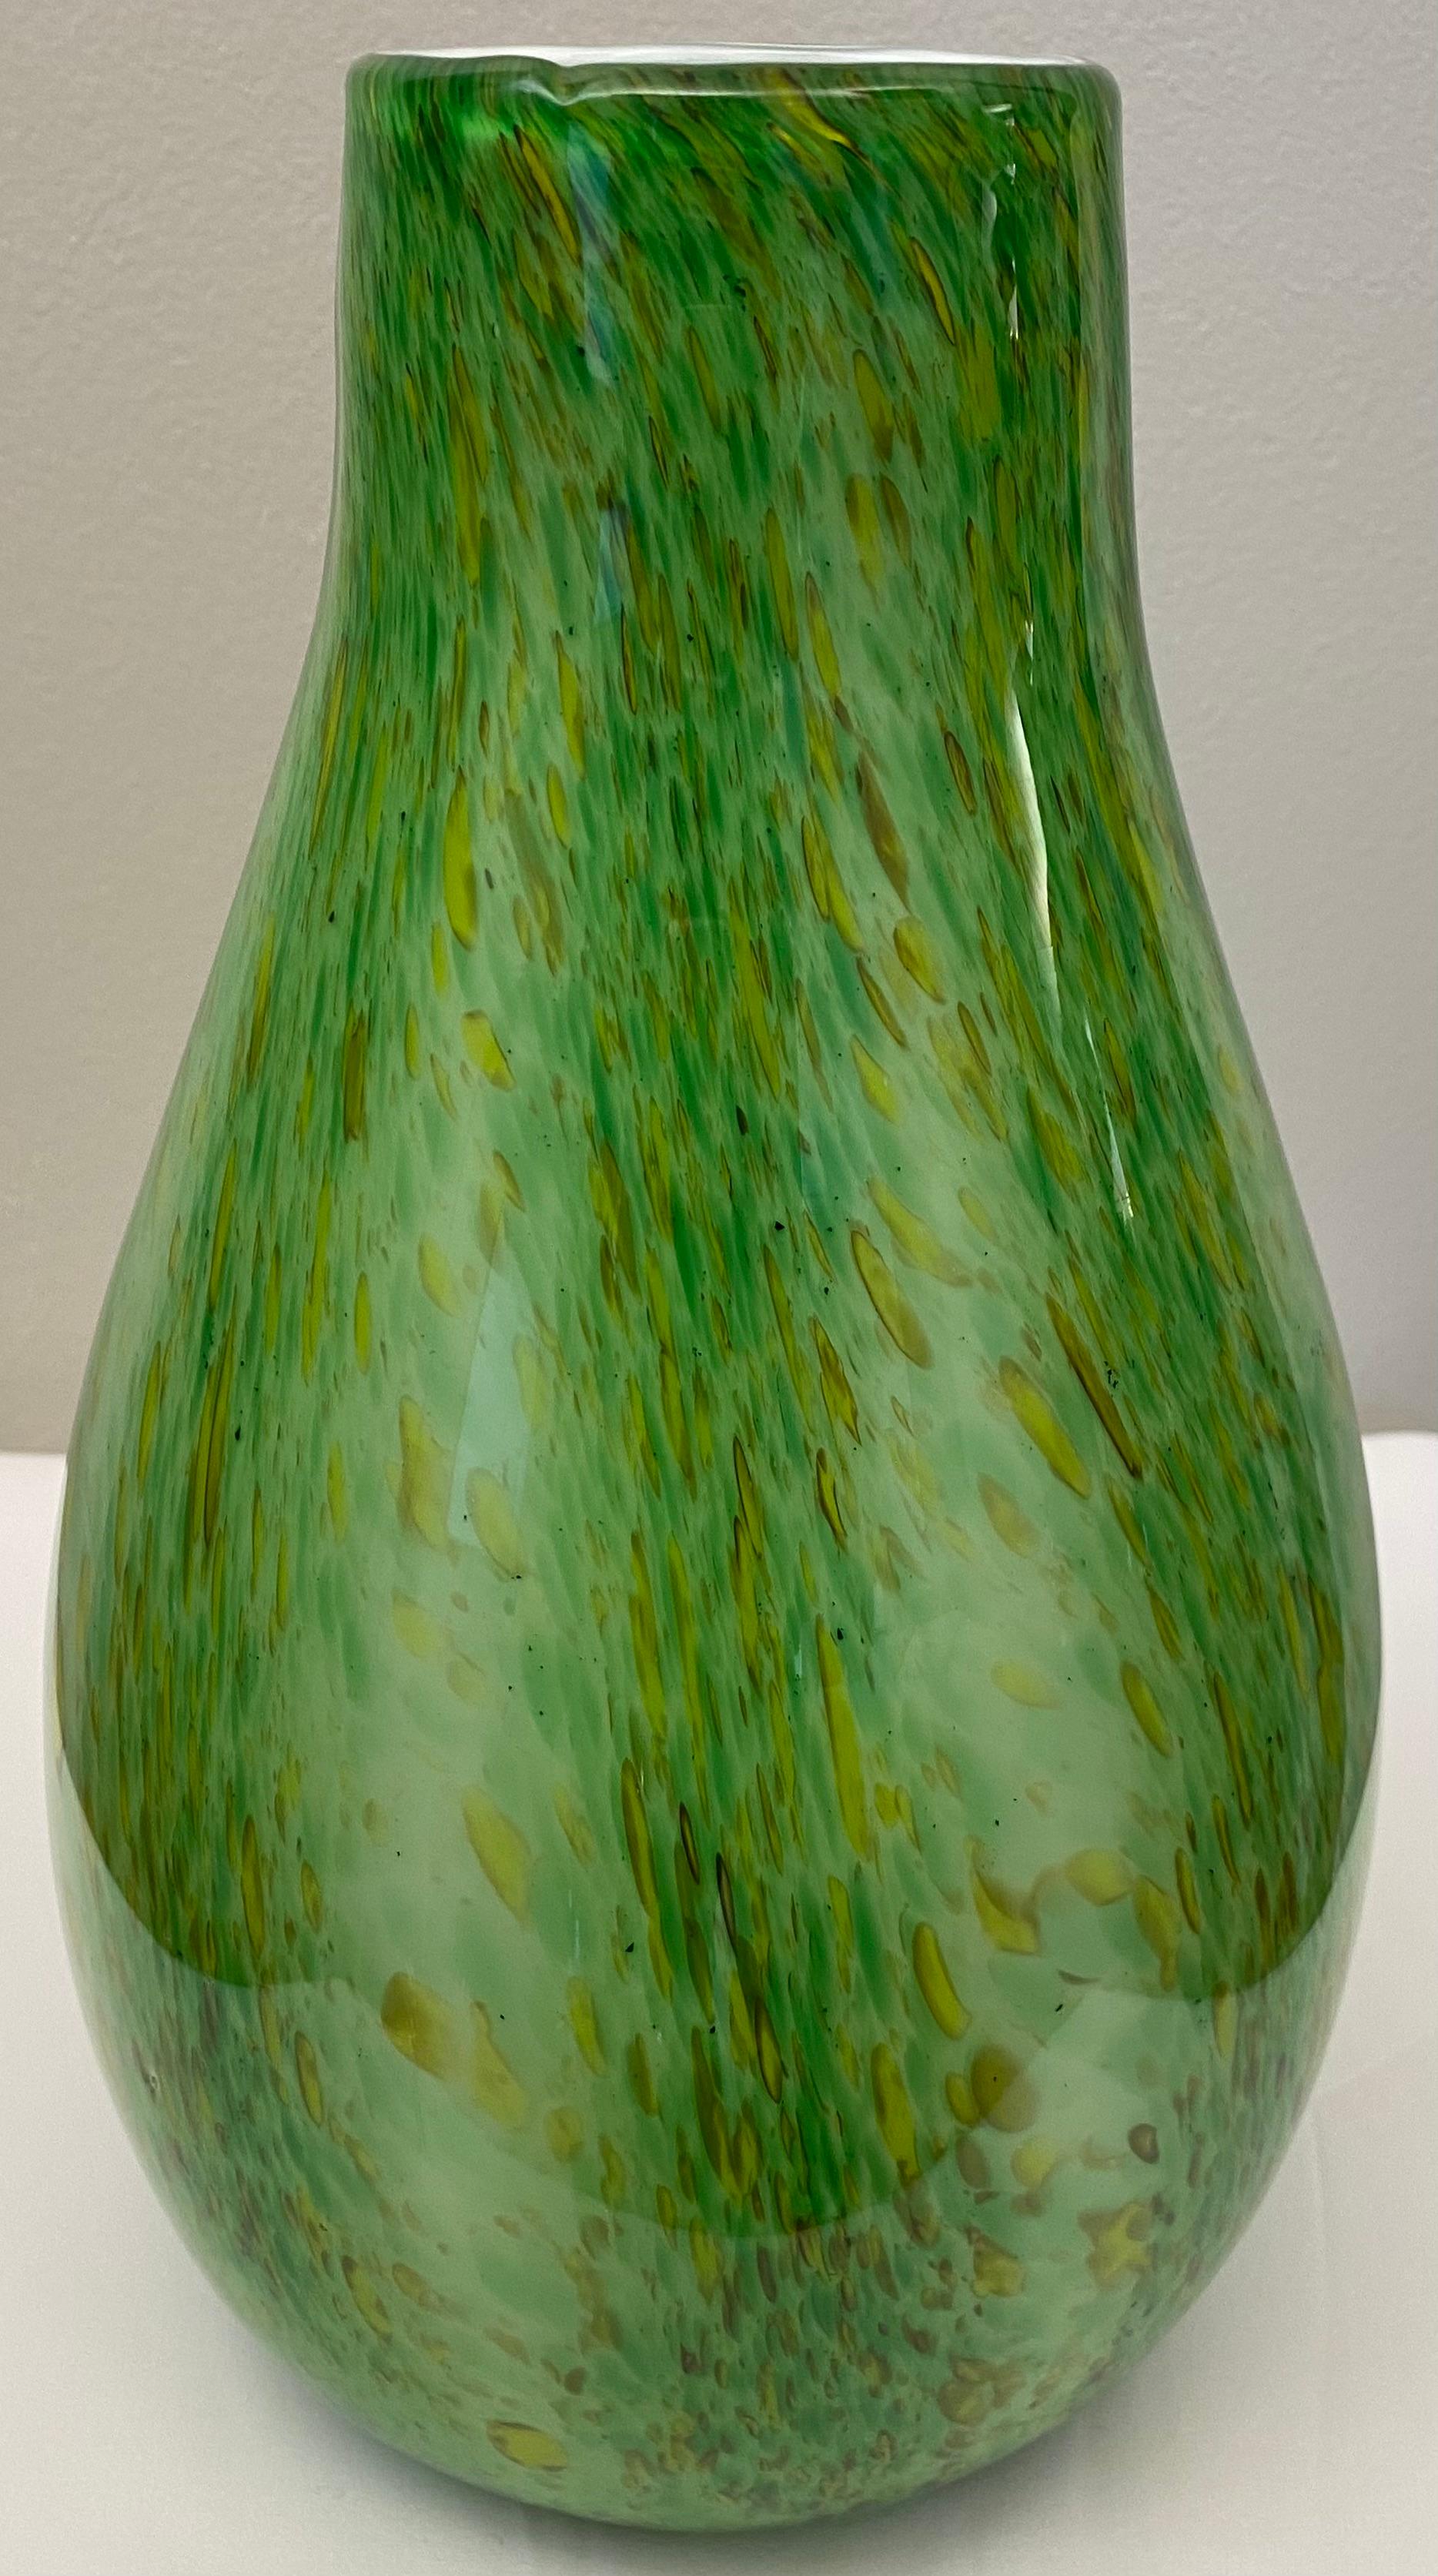 Un vase unique en verre d'art moderne organique à la manière des designs de Hilton McConnico, soufflé dans les années 1990, qui faisait vraisemblablement partie d'une collection exclusive de pièces uniques conçues pour Formia, Murano.

Ce vase vert